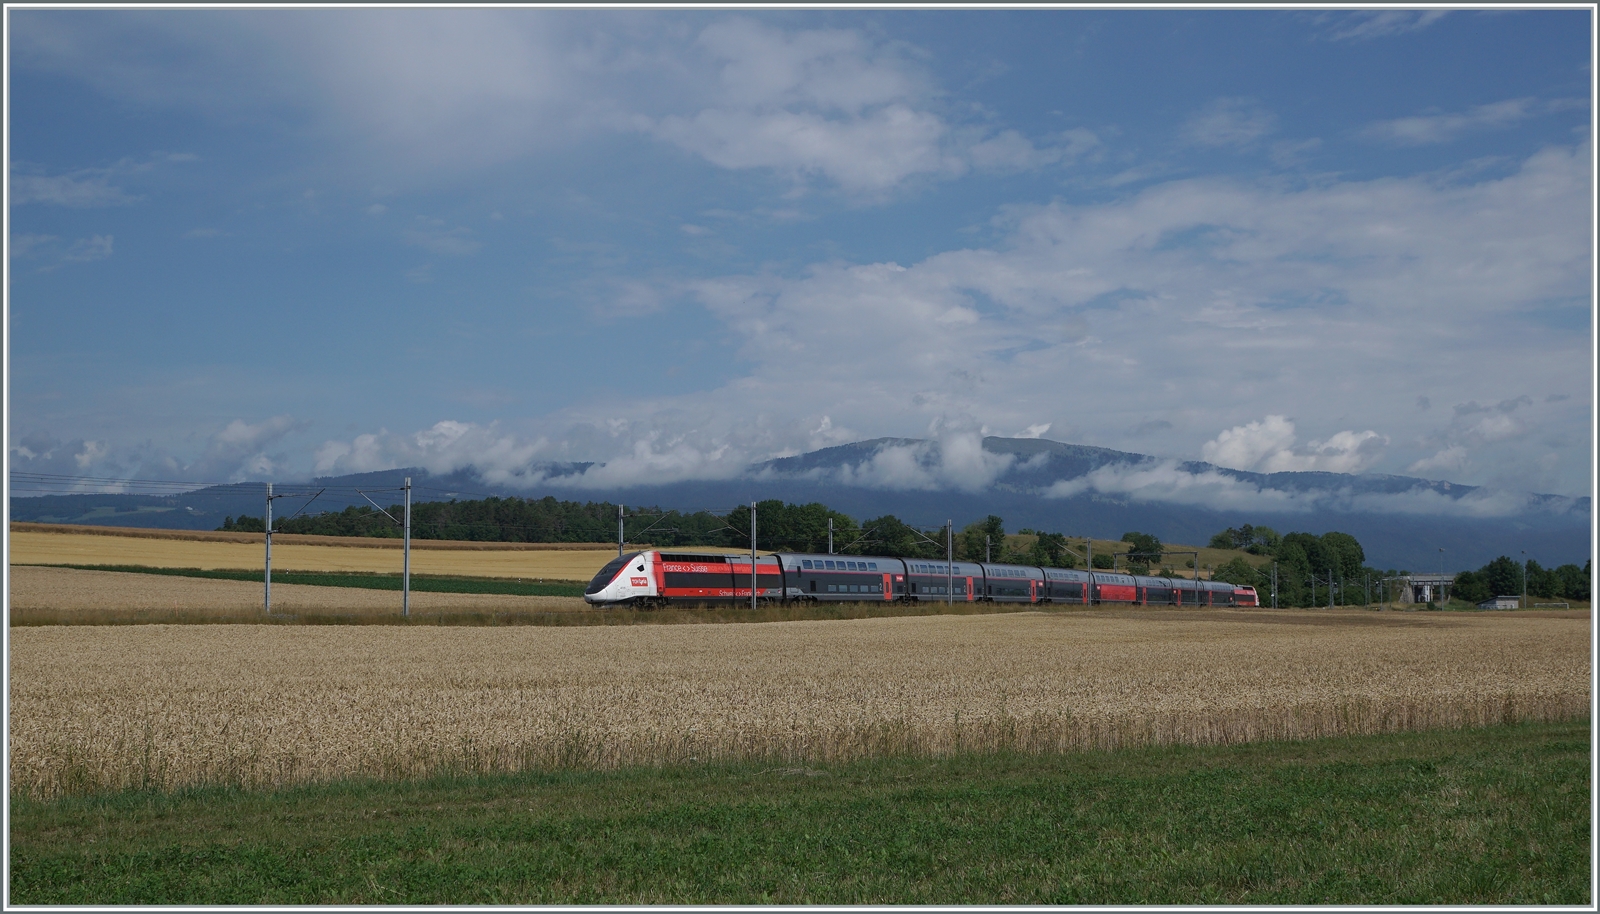 Ein TGV Lyria ist bei Arnex auf dem Weg von Paris Gare de Lyon nach Lausanne.

4. Juli 2022